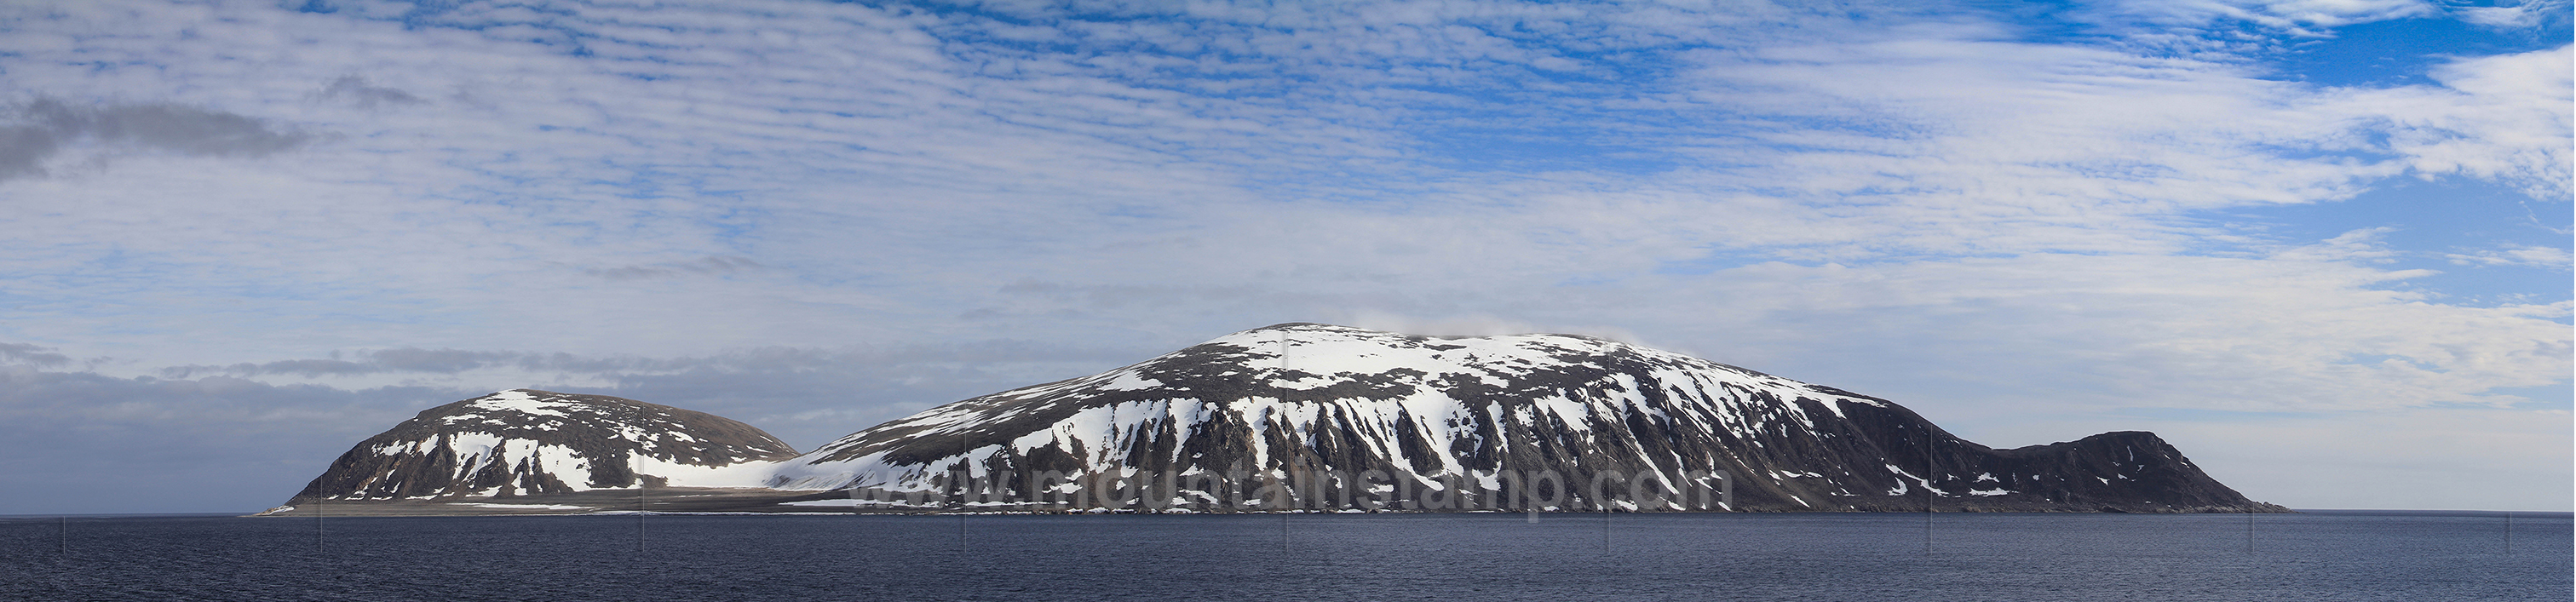 Spitsbergen panorama Sjuøyane archipelago